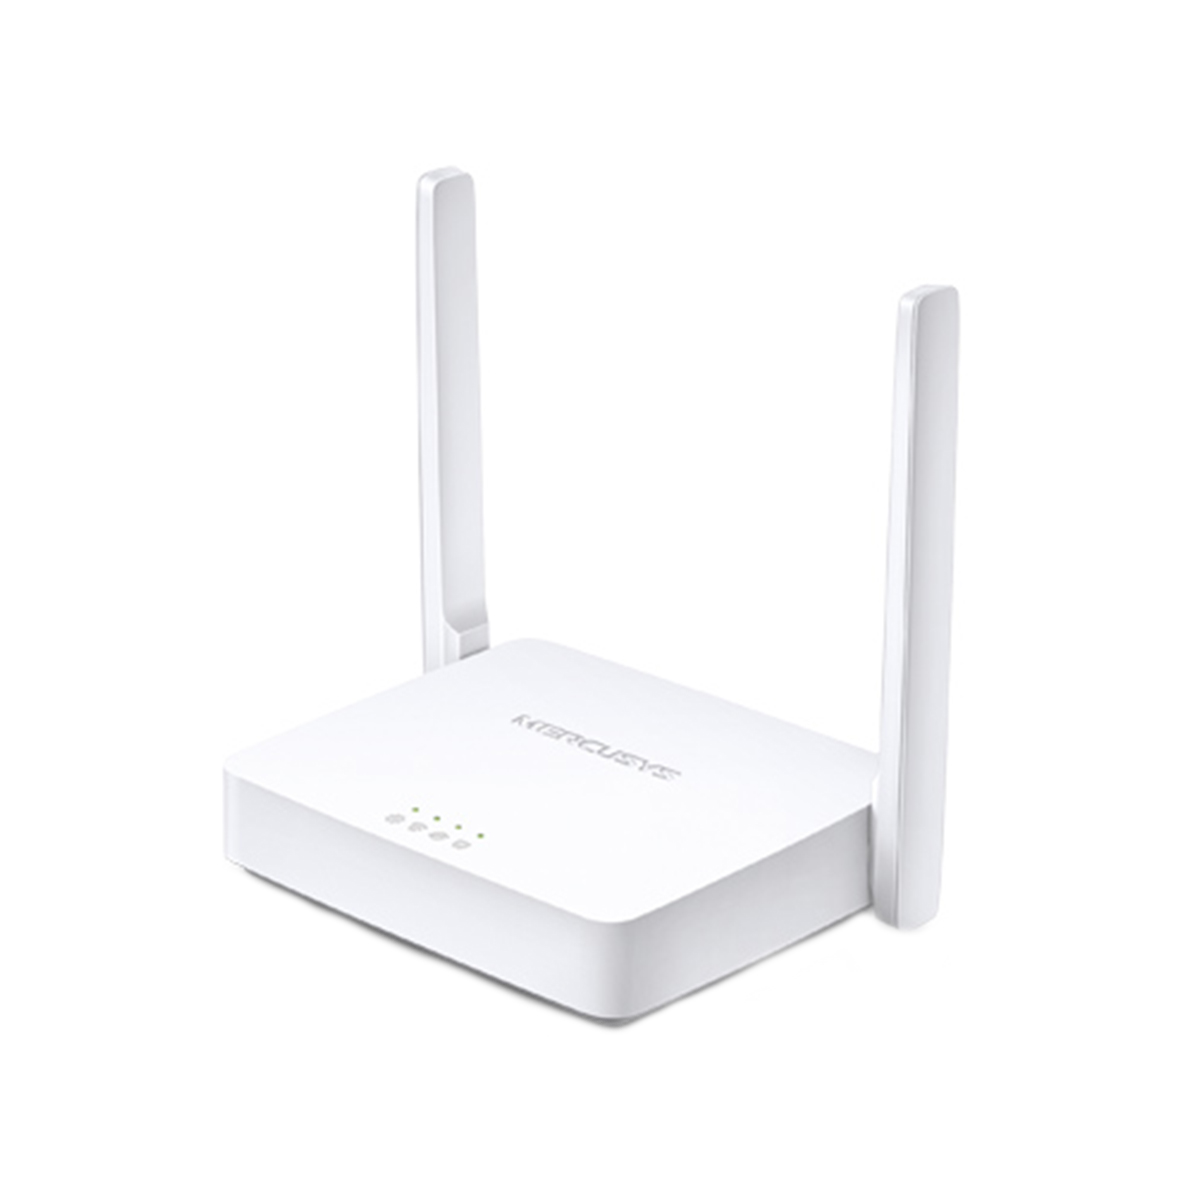 Wi-Fi Роутер Mercusys MW301R (N300, 1*FE Wan , 2*FE LAN , 2 антенны)